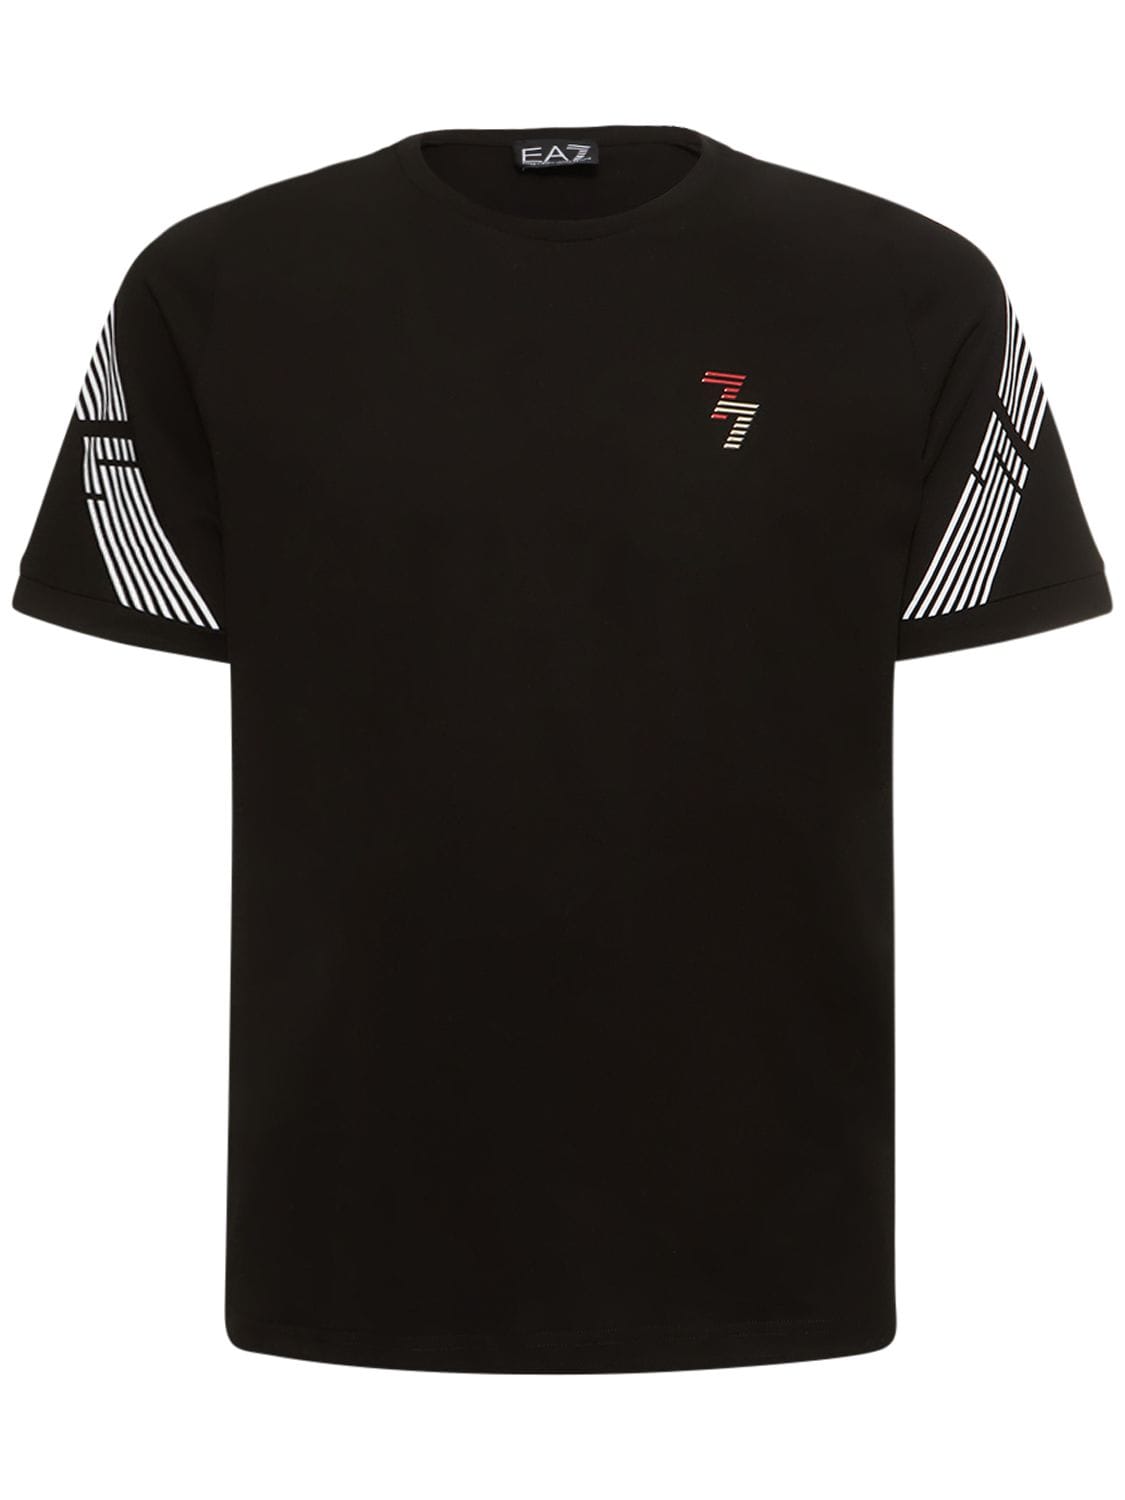 EA7 7 LINES再生棉质平纹针织T恤